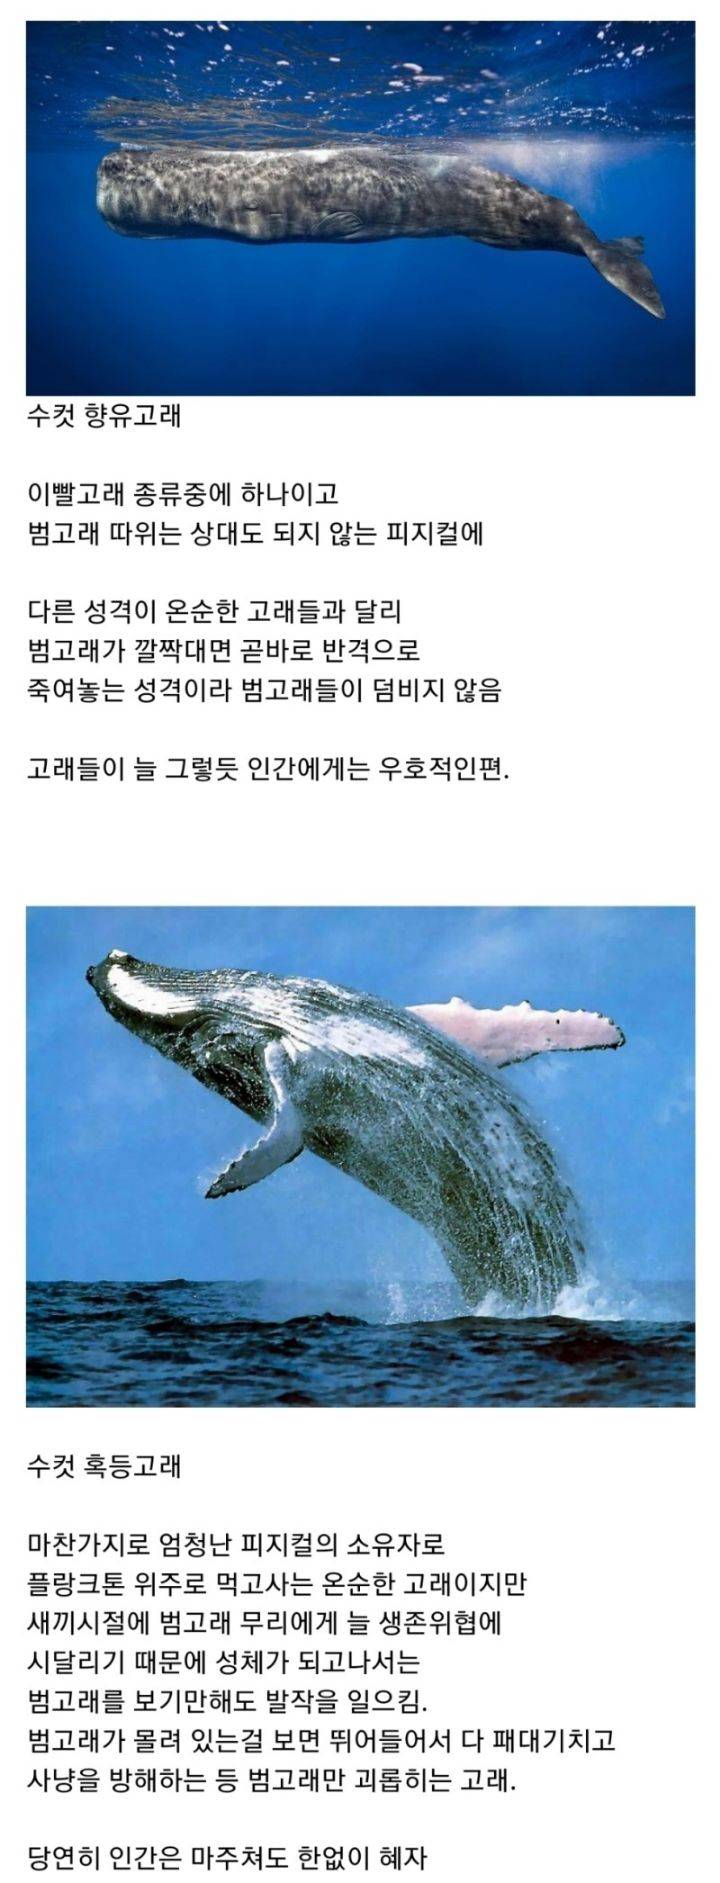 범고래 보다도 강하다는 해양생물